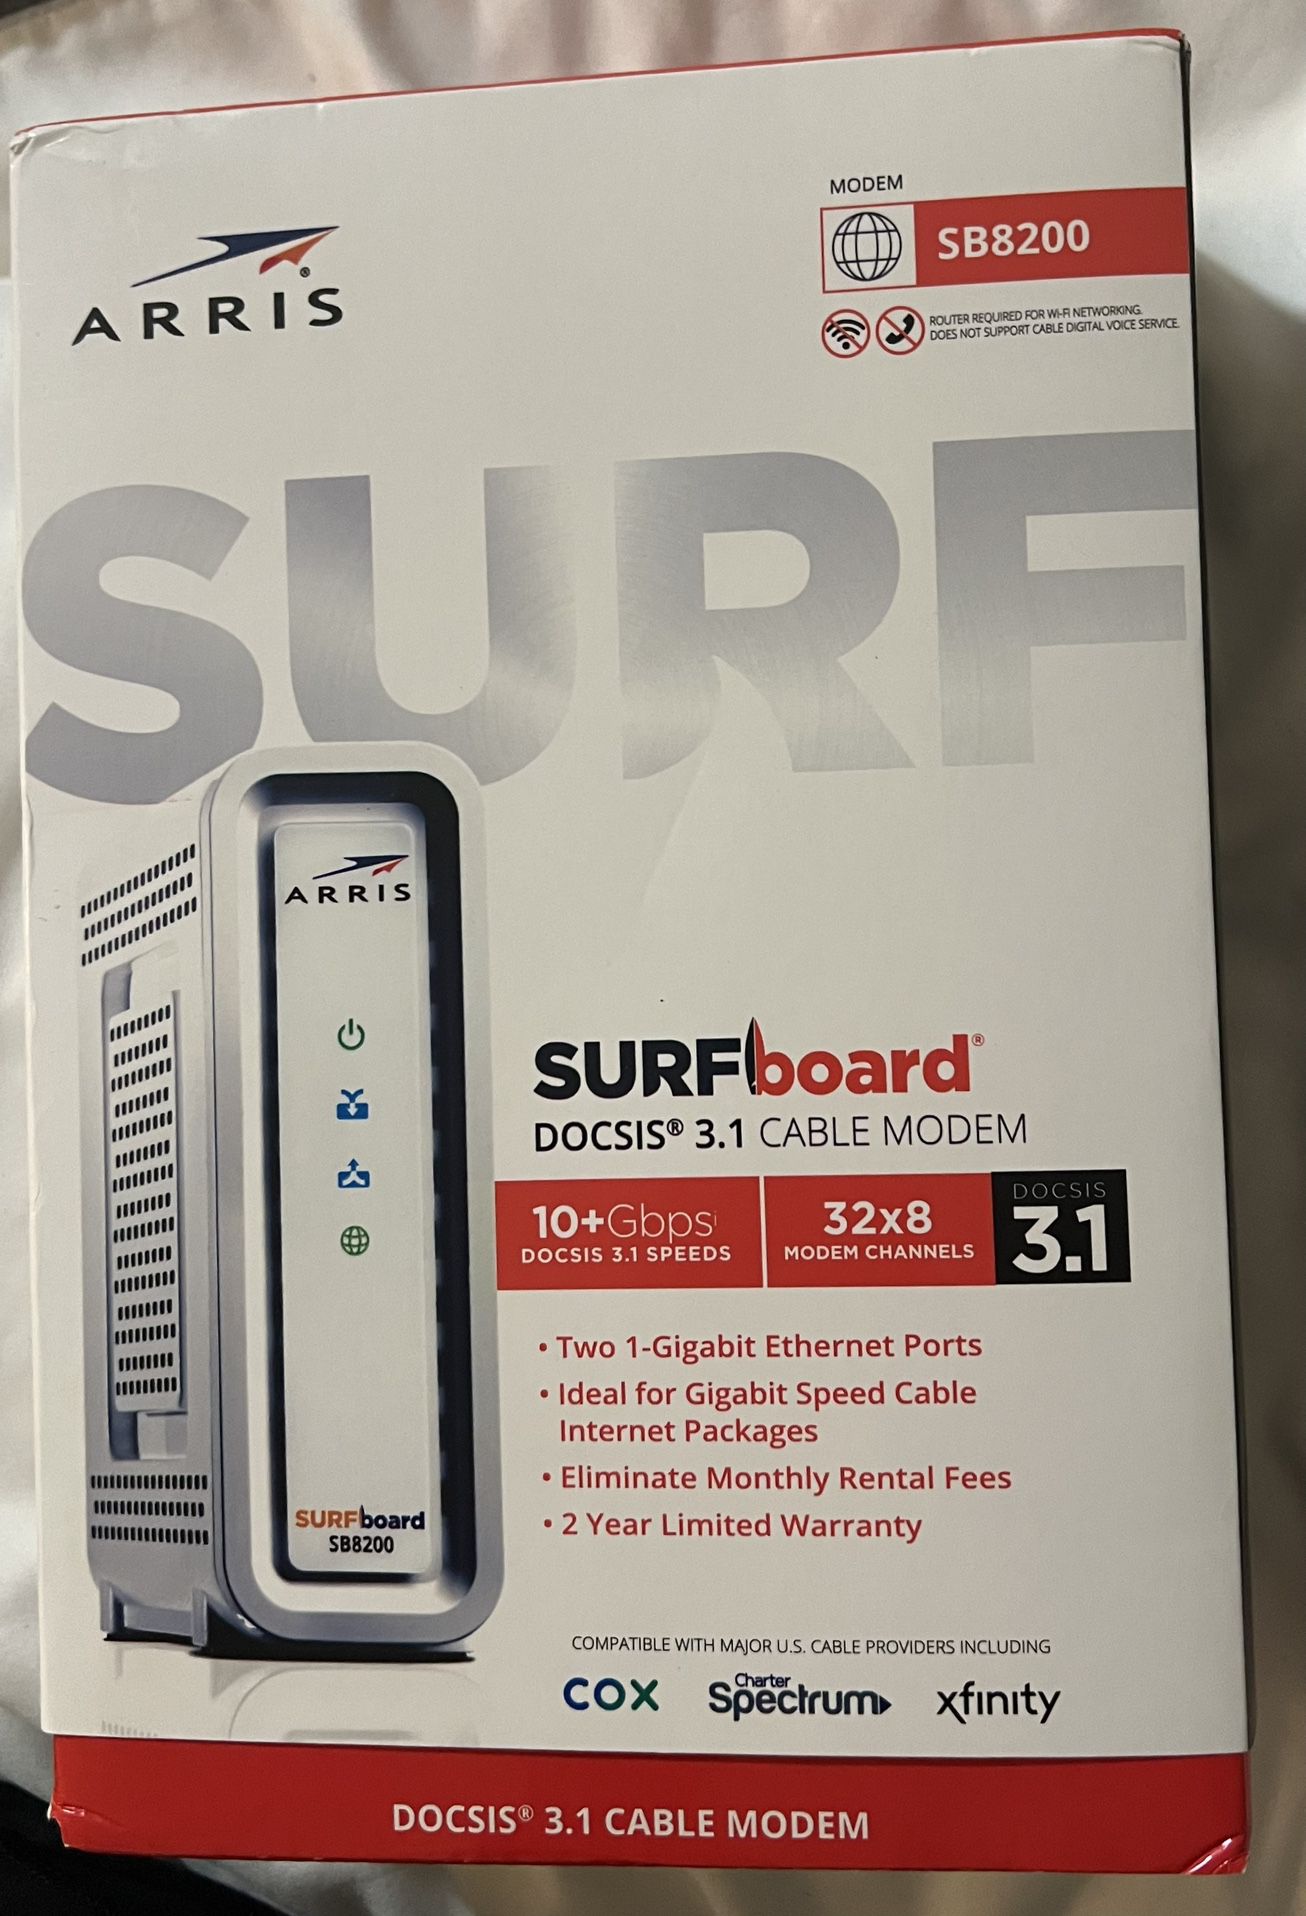 ARRIS Surfboard SB8200 DOCSIS 3.1 Cable Modem,